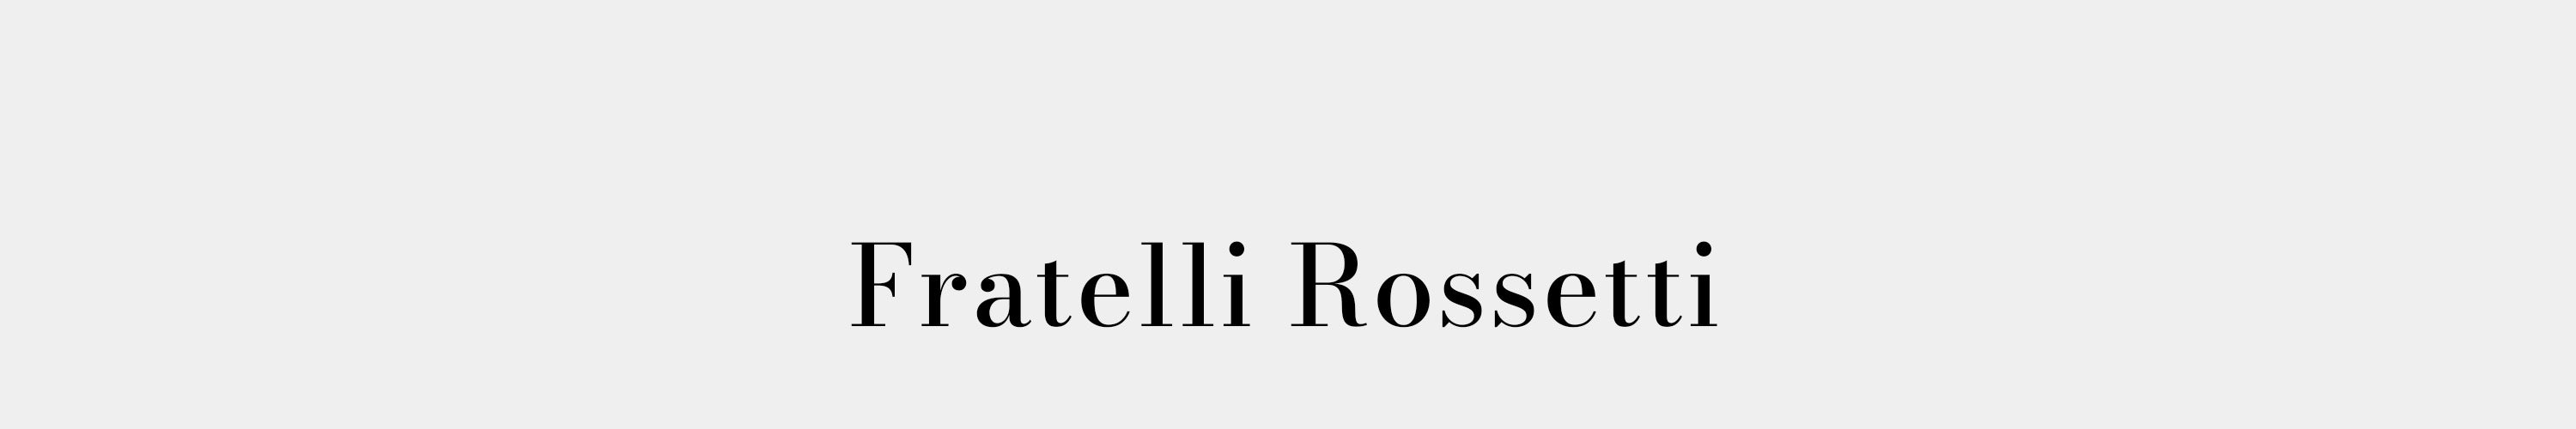 Kadın Fratelli Rossetti